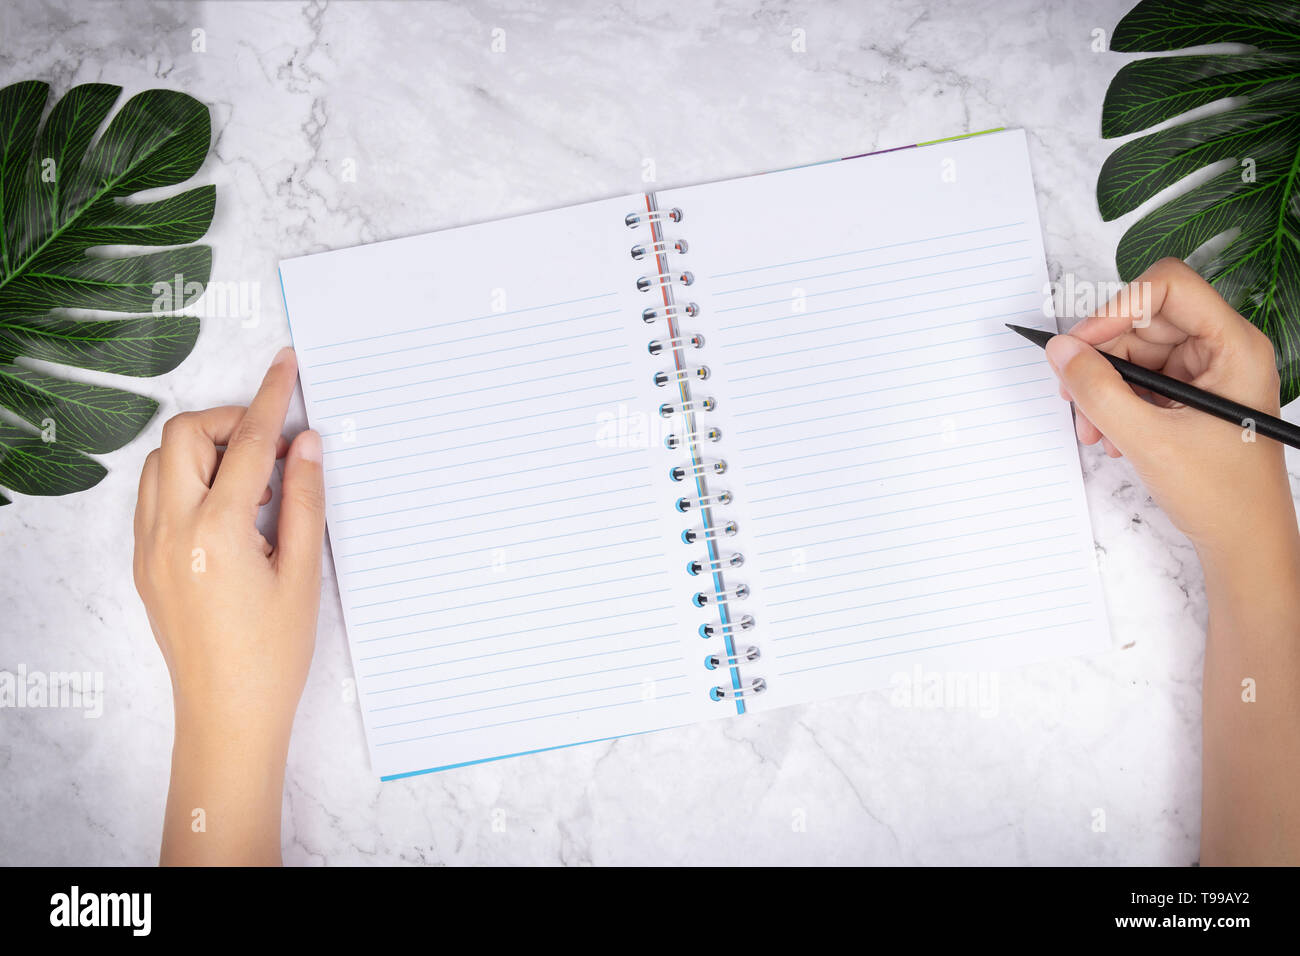 Flach der Frau Hand schreiben in eine leere weiße Seite notebook auf weißem Marmor Schreibtisch, Ansicht von oben. Green Palm Leaf auf dem Schreibtisch für die Dekoration Stockfoto